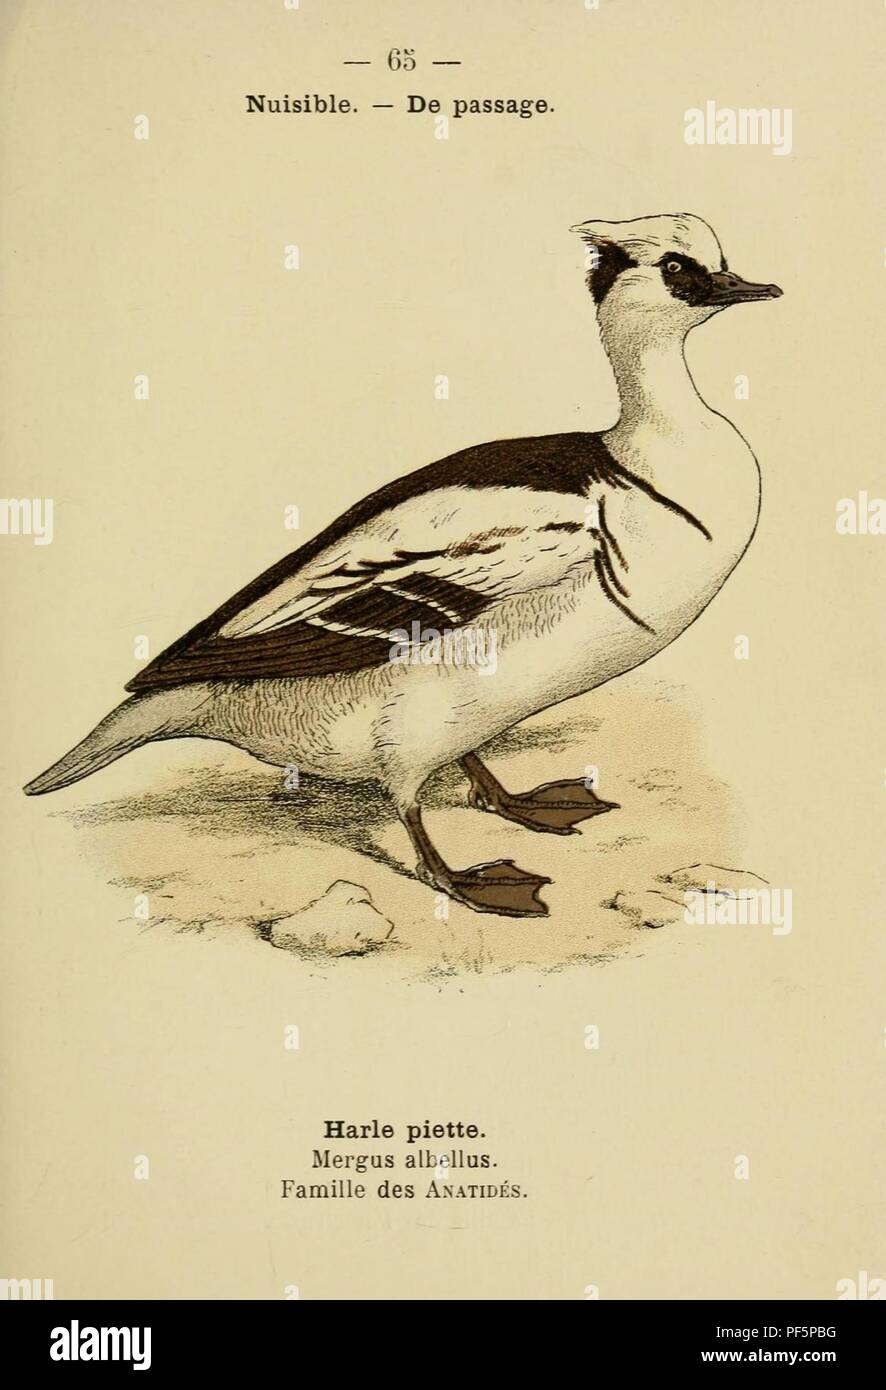 Atlas de poche des oiseaux de France, Suisse et Belgique, utiles ou nuisibles (Pl. 65) (10075000293). Foto Stock